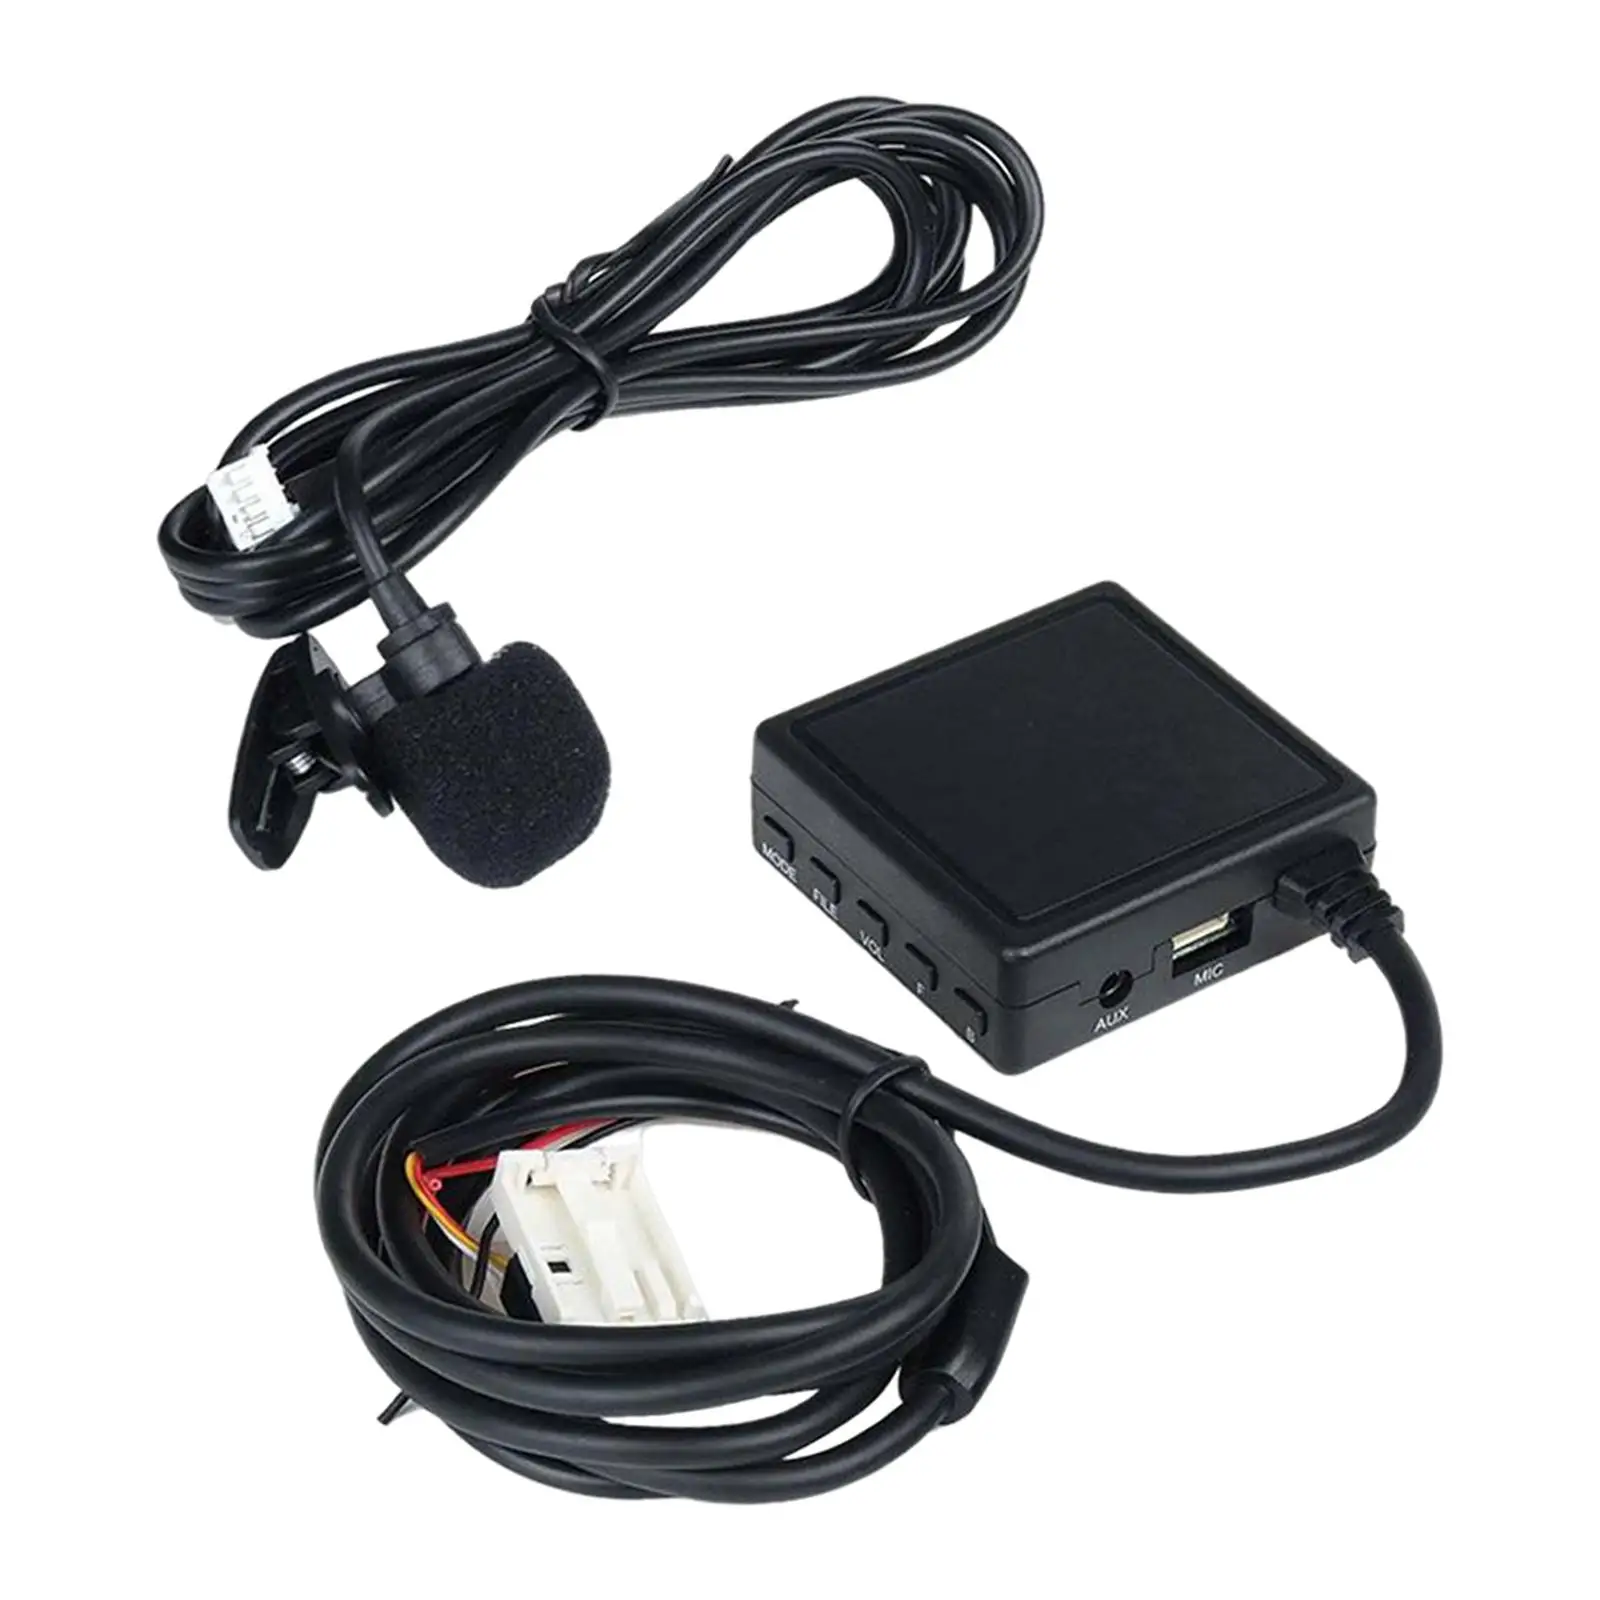 Car AUX Cable Adapter Support Handsfree Call Accessories for E65 E90 E60 E82